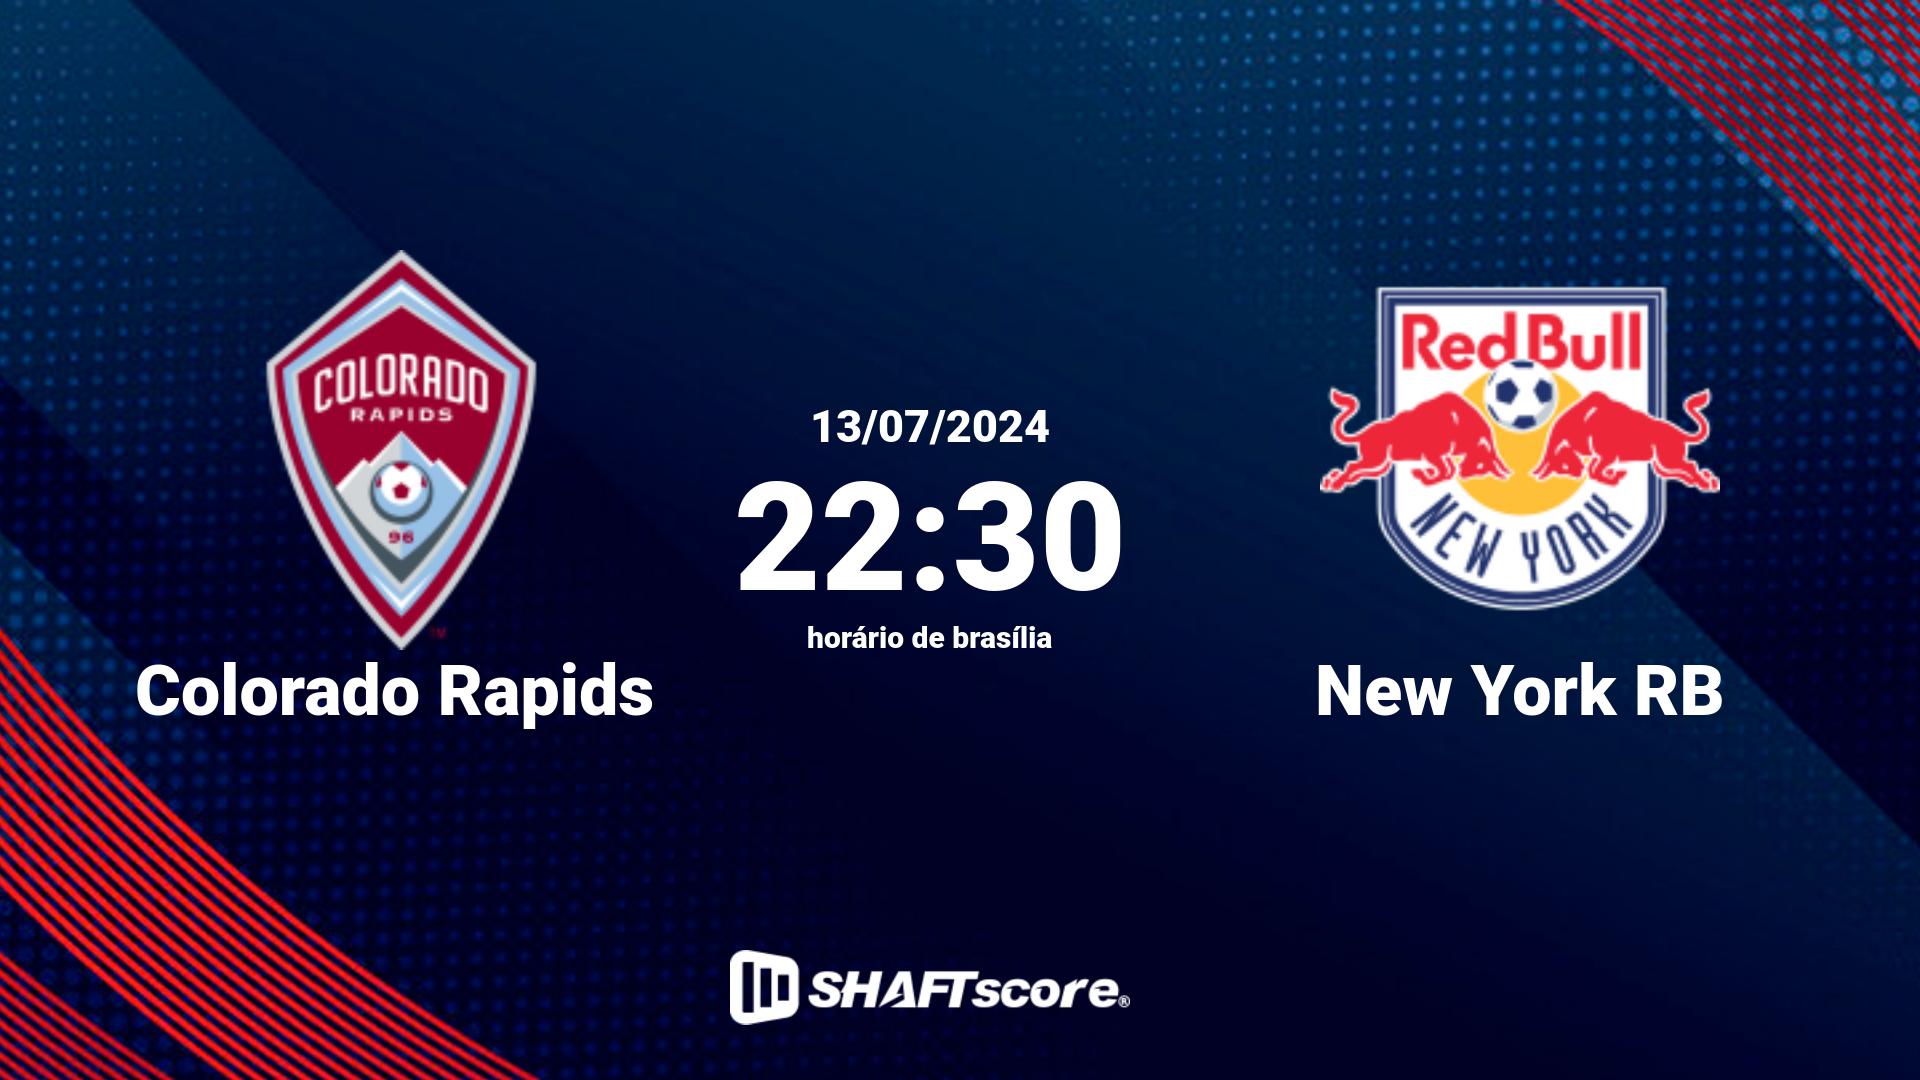 Estatísticas do jogo Colorado Rapids vs New York RB 13.07 22:30